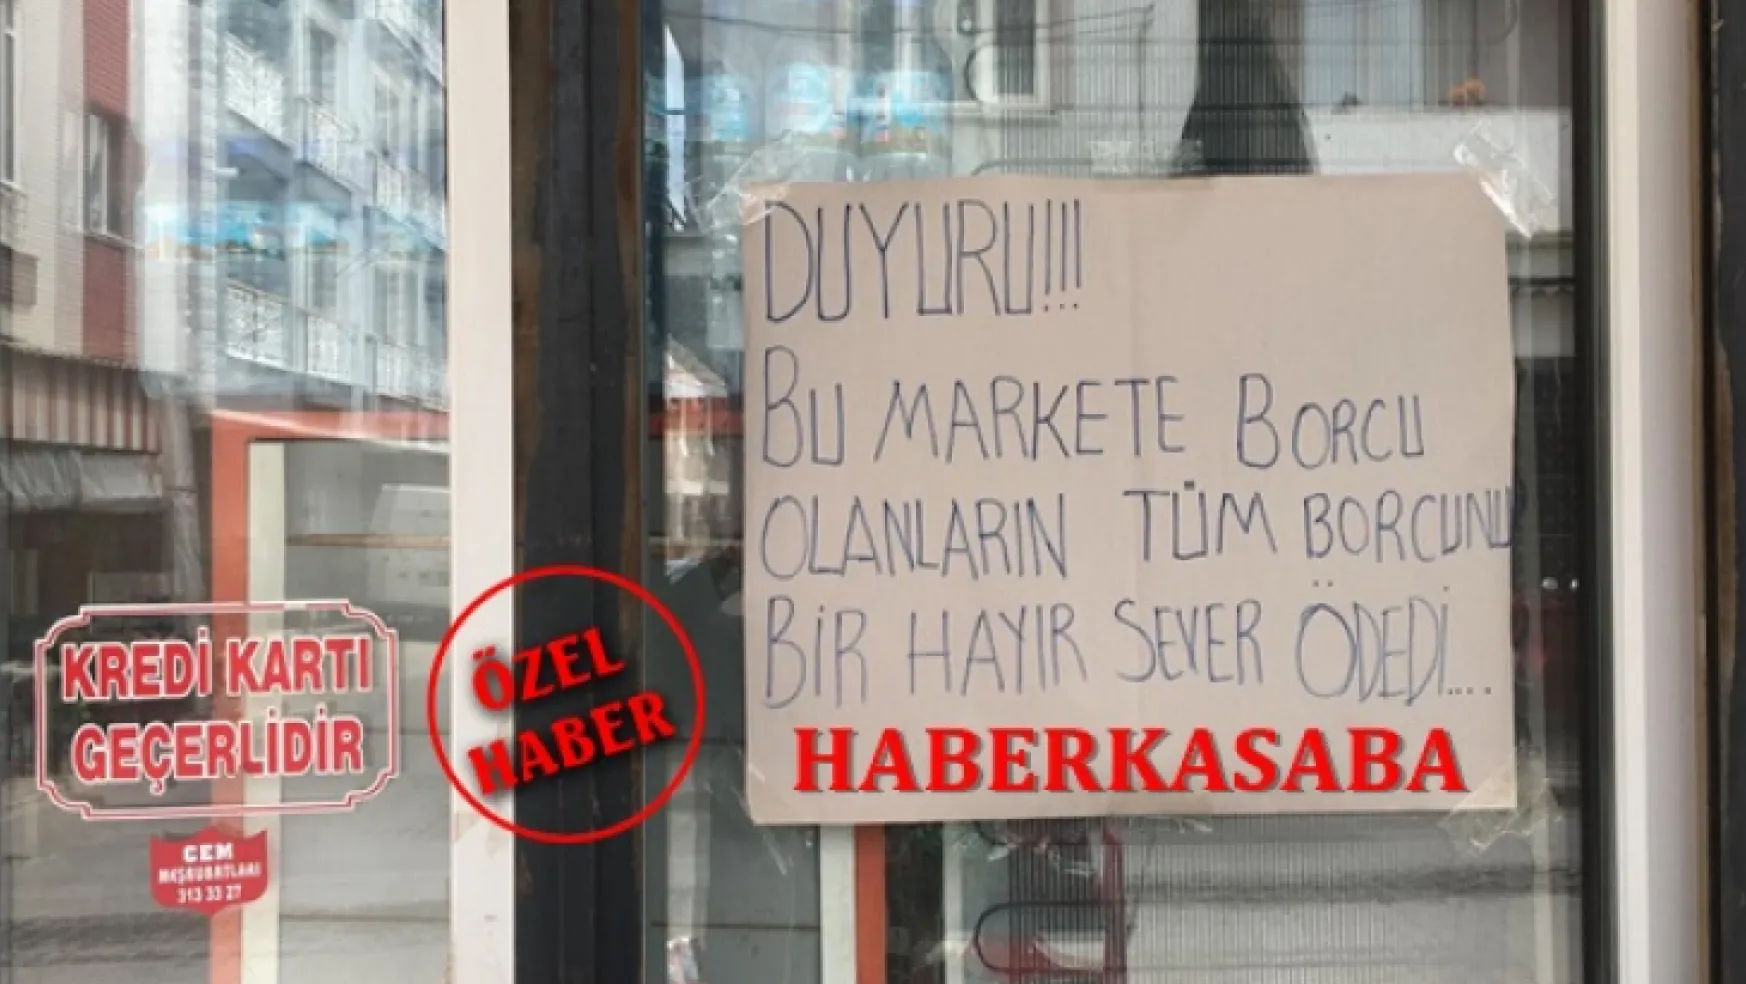 Turgutlu'nun Gizemli Hayırseveri Vatandaşların Bakkal Borçlarını Ödedi